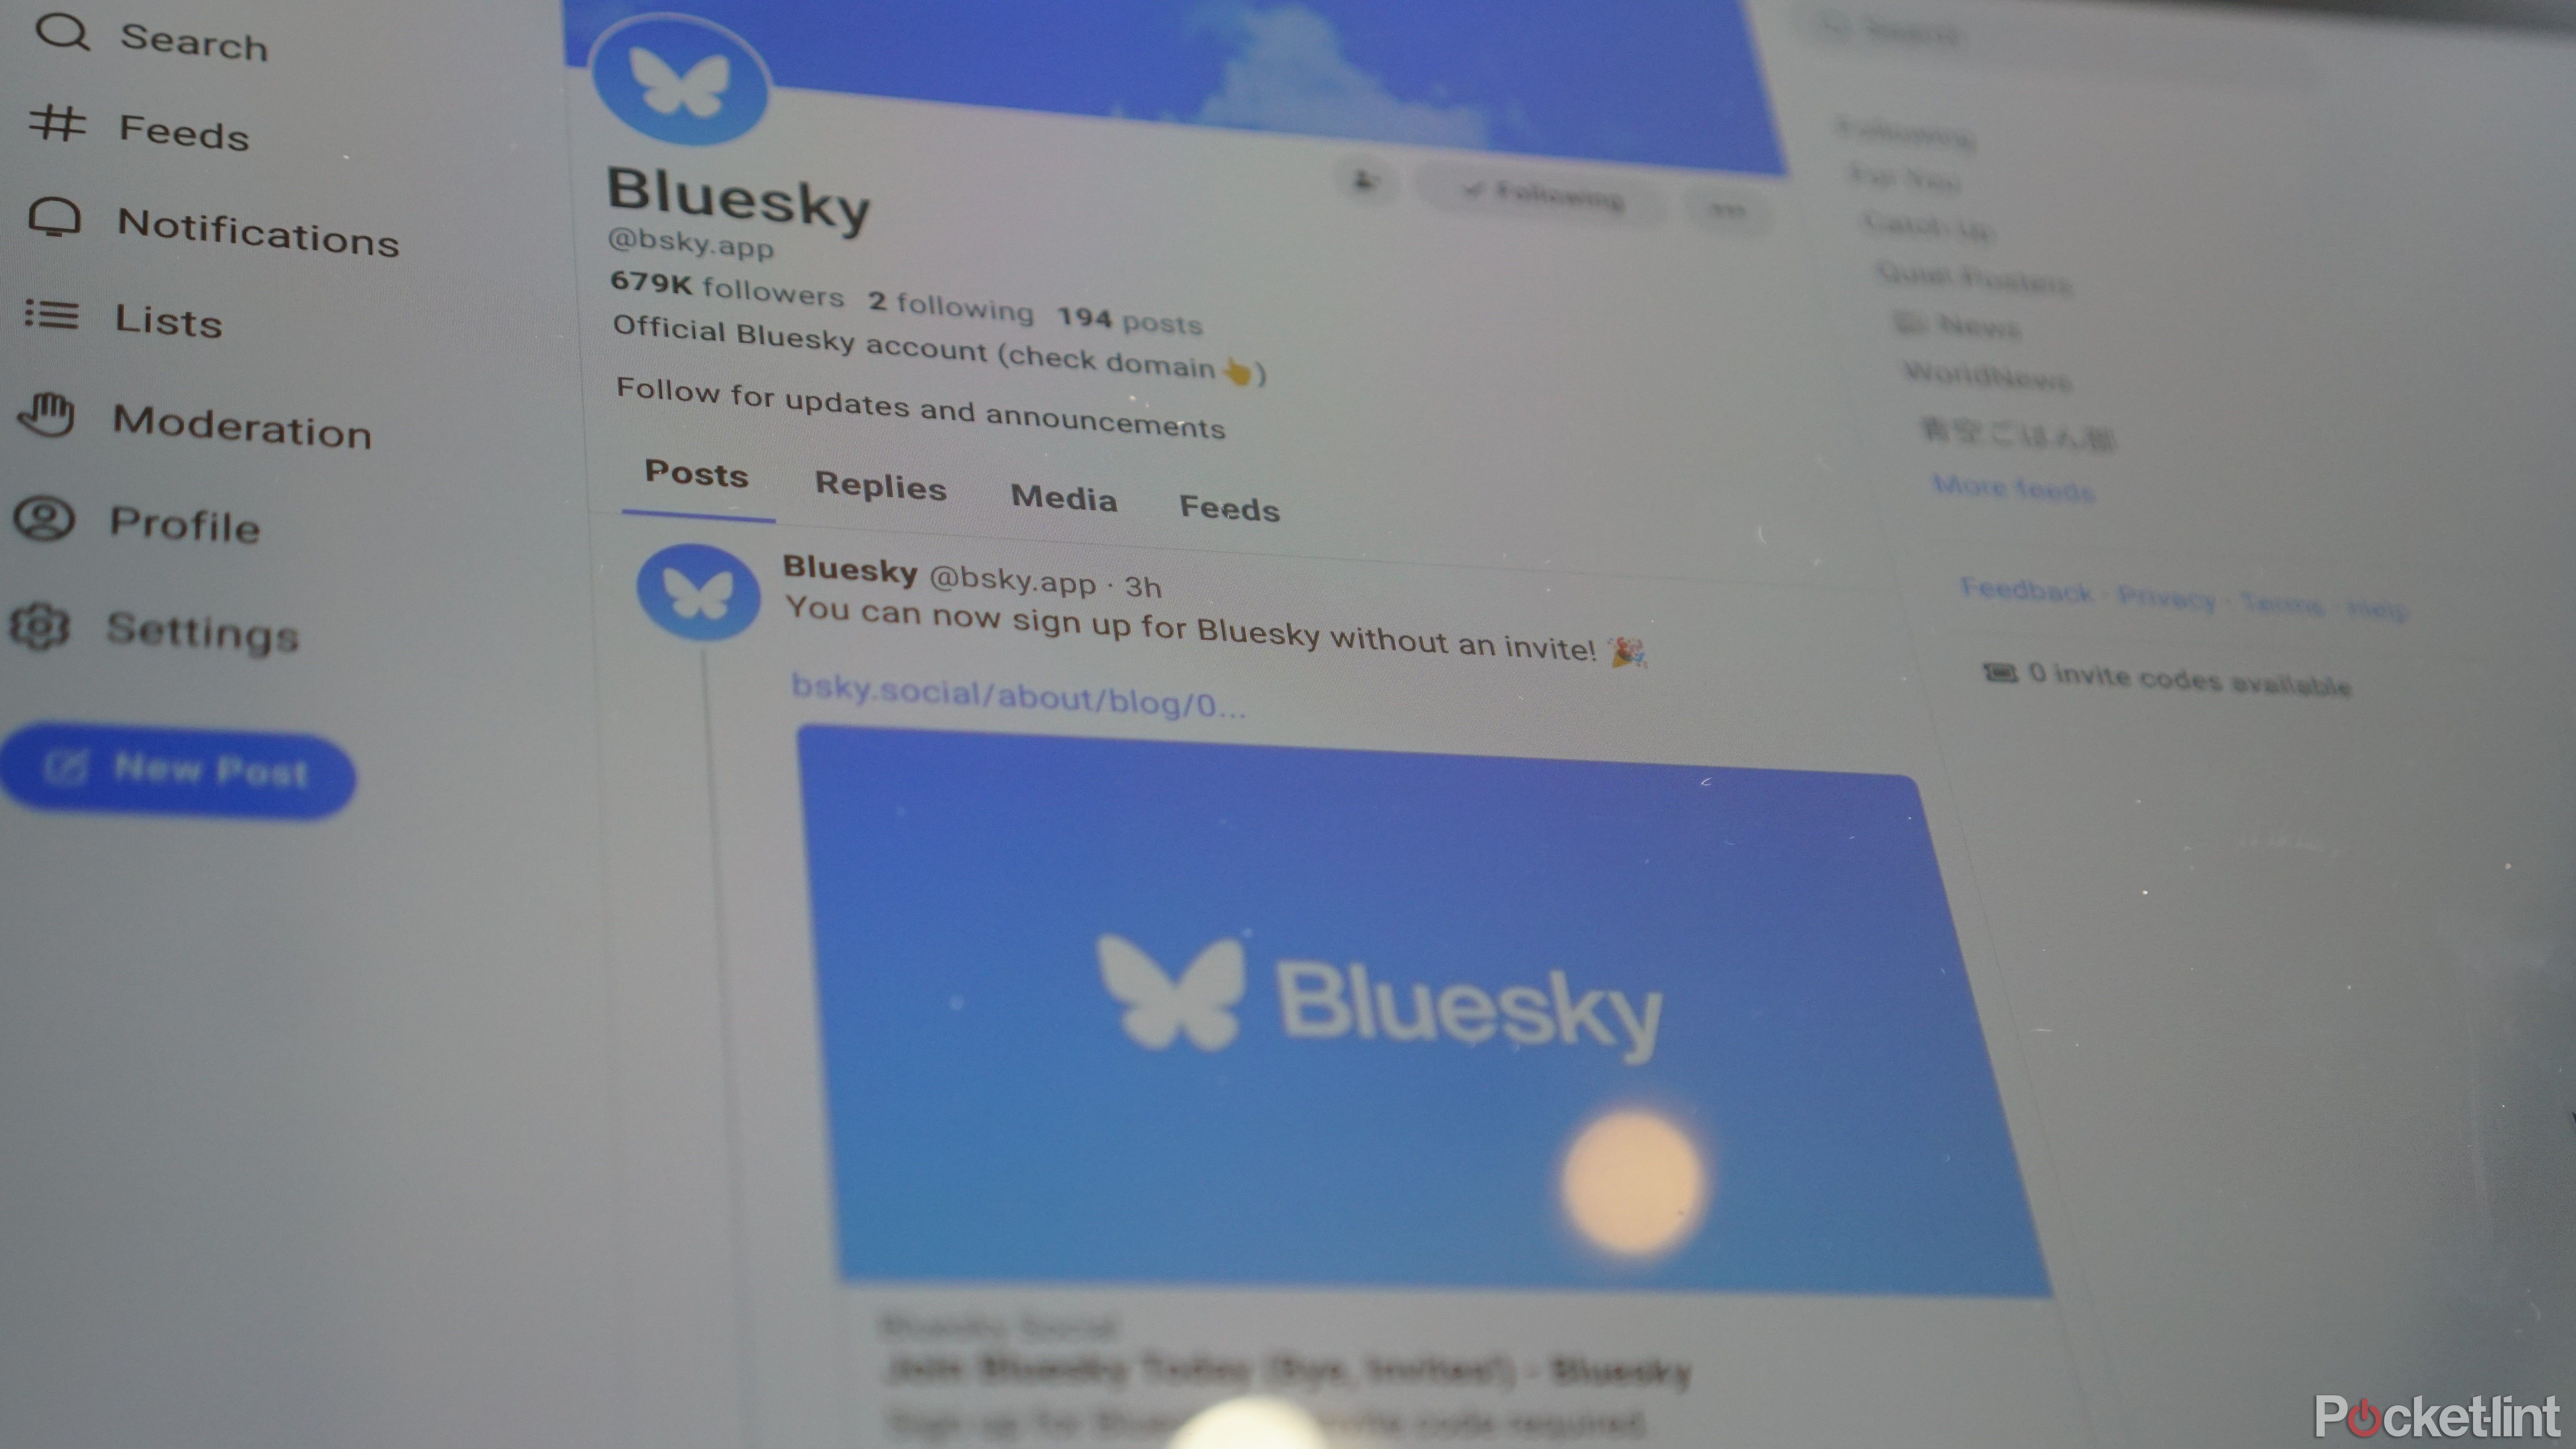 Bluesky's profile page on Bluesky.